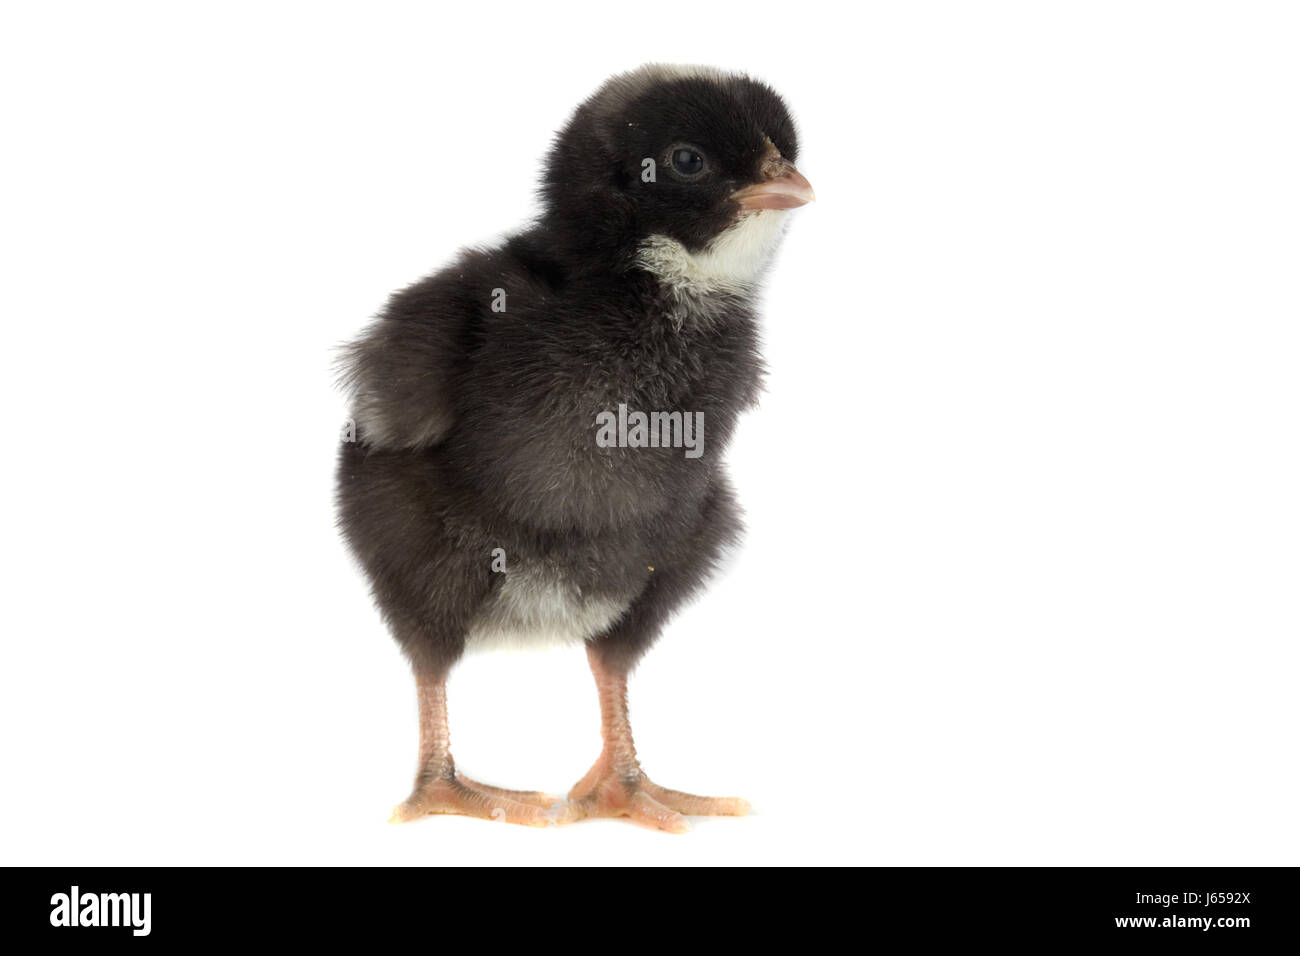 Jetblack basané noir deep black petite toute petite vie simple poulet court Banque D'Images